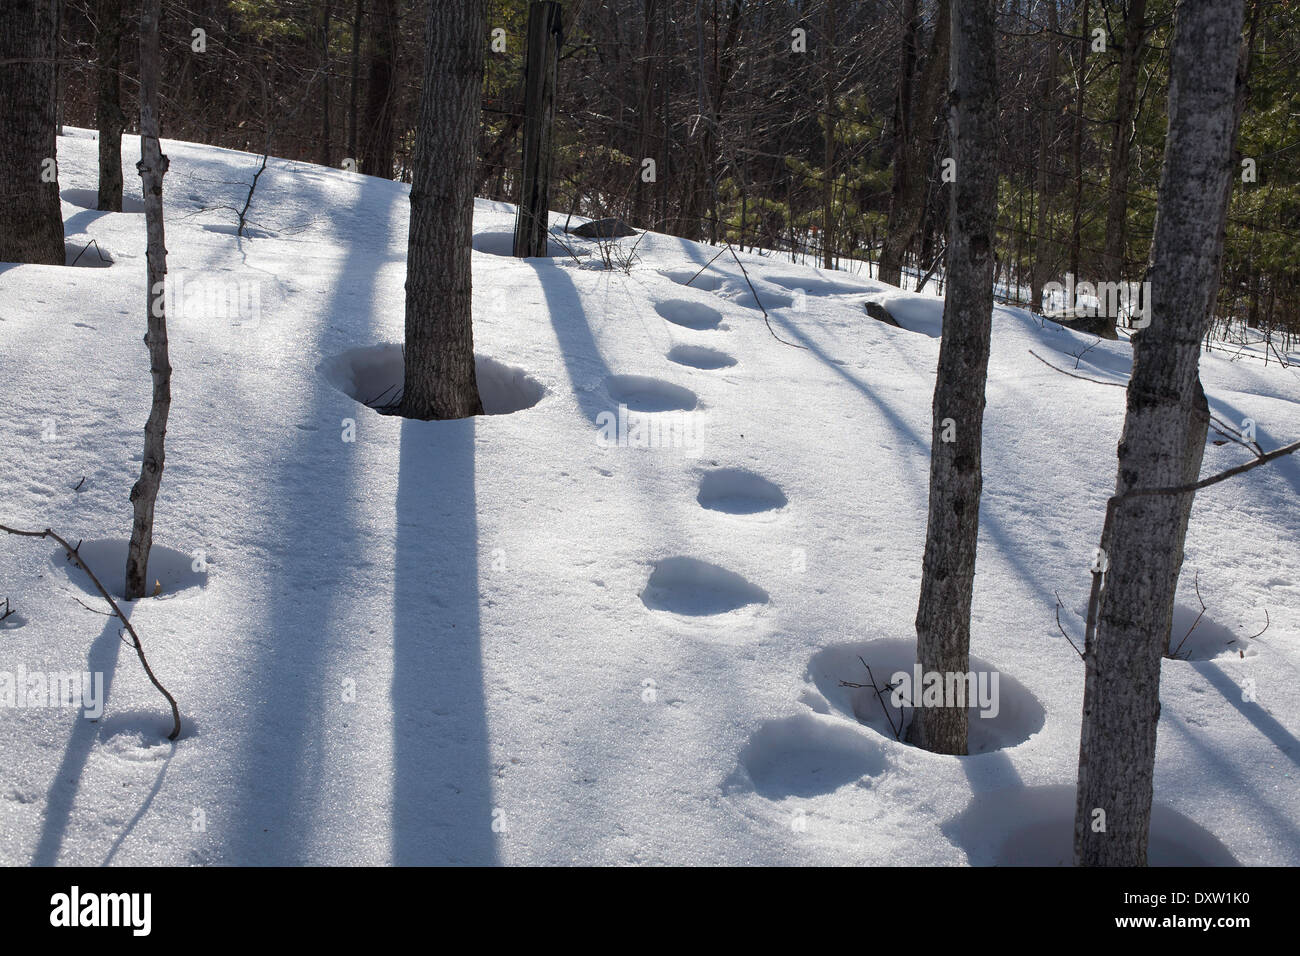 Les arbres projettent de grandes ombres d'hiver sur la neige sous le soleil d'après-midi jour de la Nouvelle-Angleterre avec des cercles d'empreintes humaines. Banque D'Images